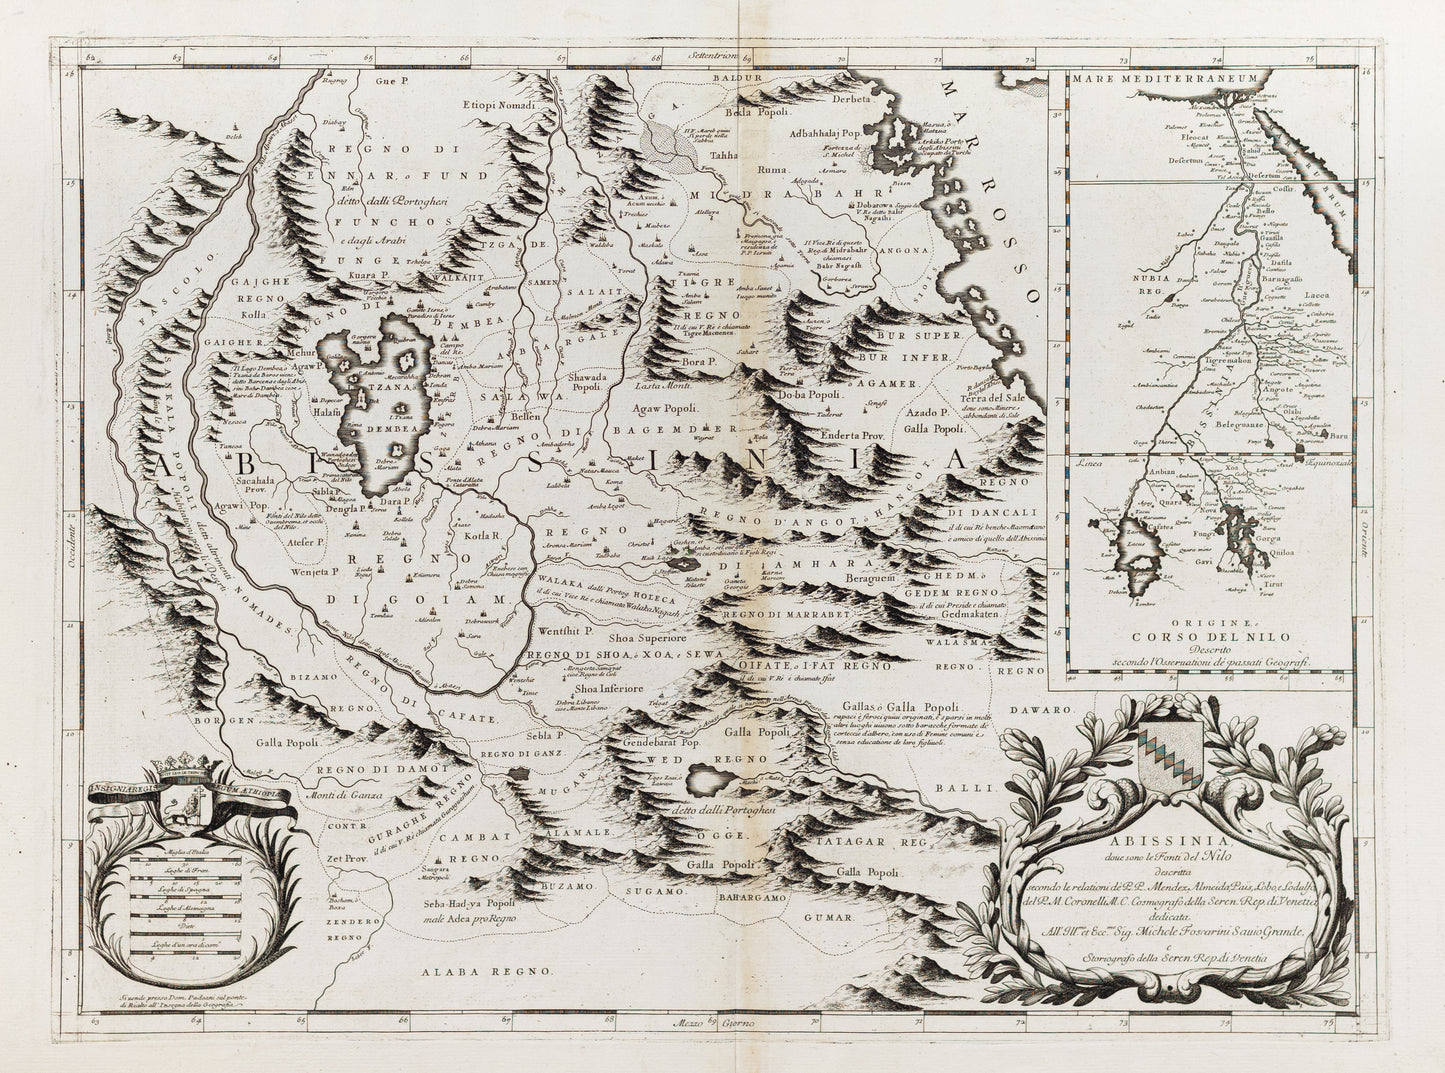 Maria Coronelli, Vincenzo. Abissina, de sono le Fonti del Nilo [Map of Ethiopia]. Venice, 1688.